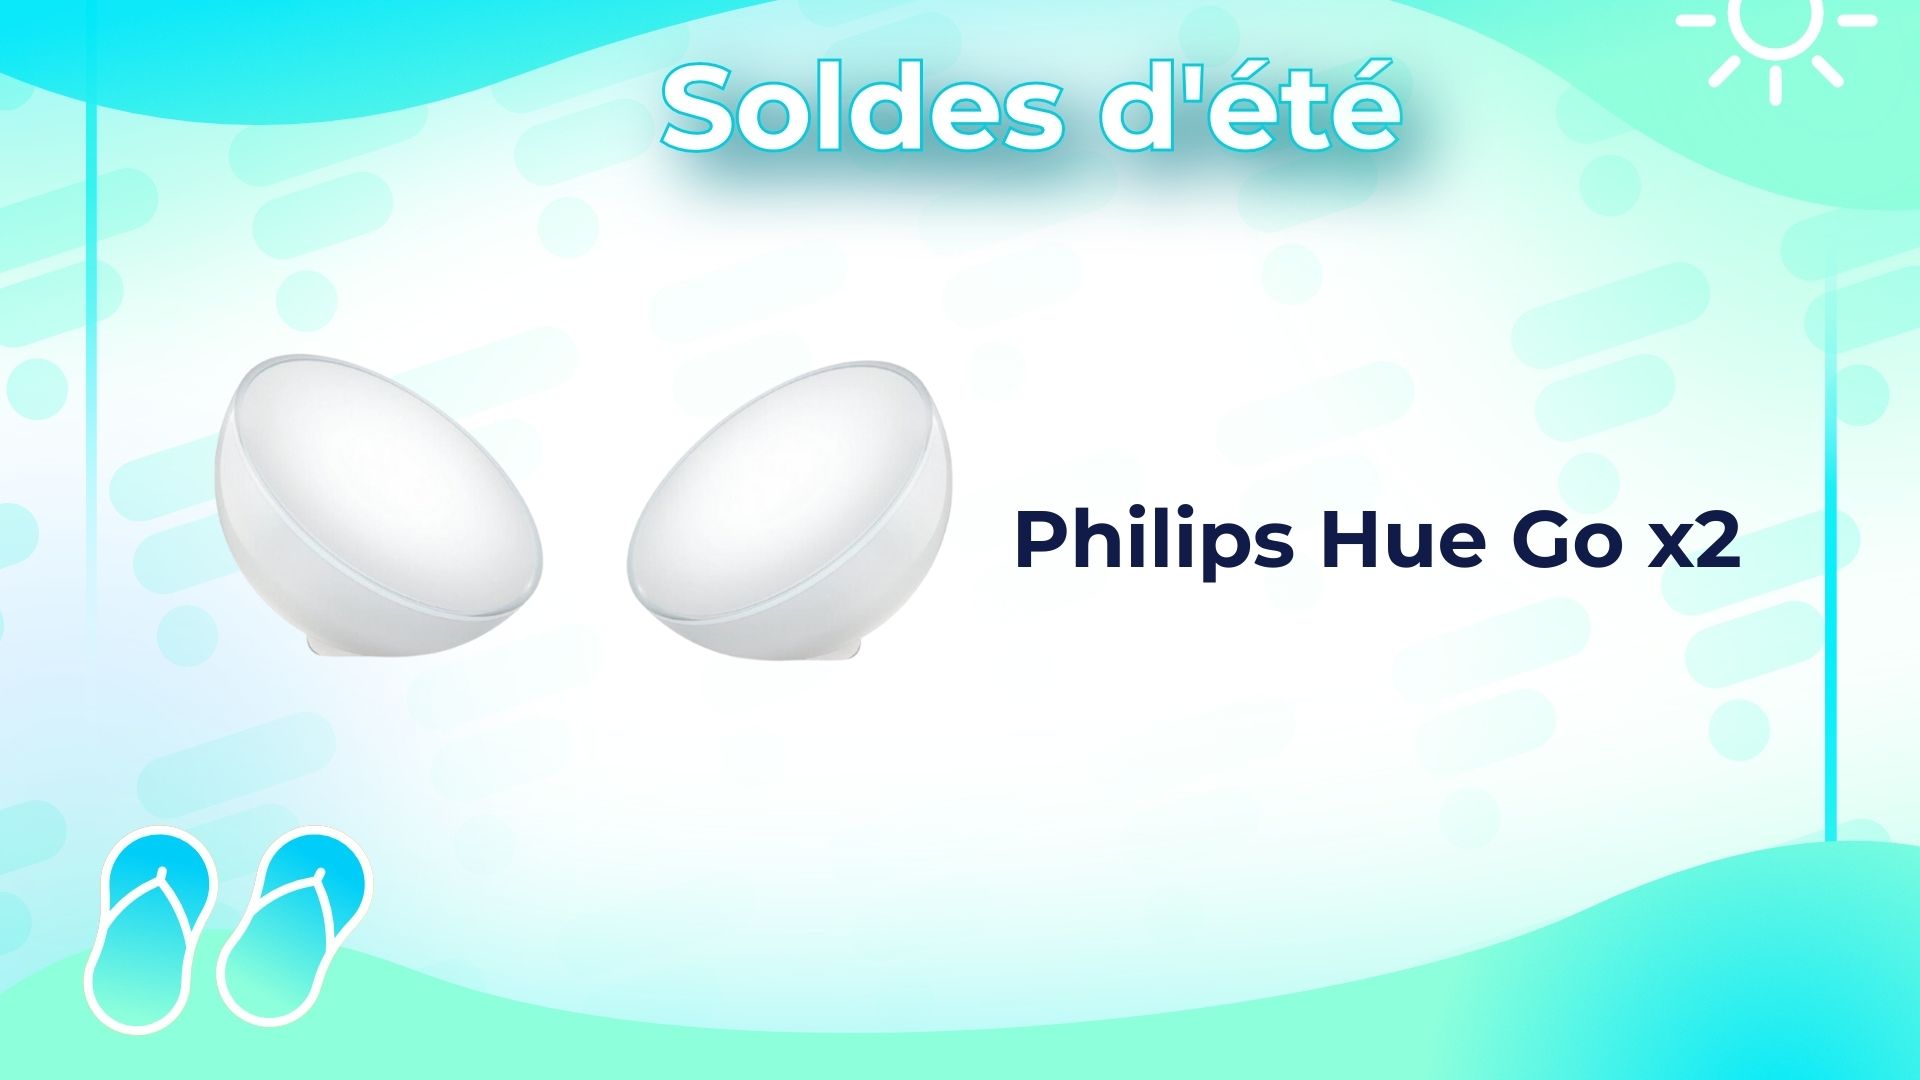 French Days : pack de 2 lampes Philips Hue Go à moitié prix